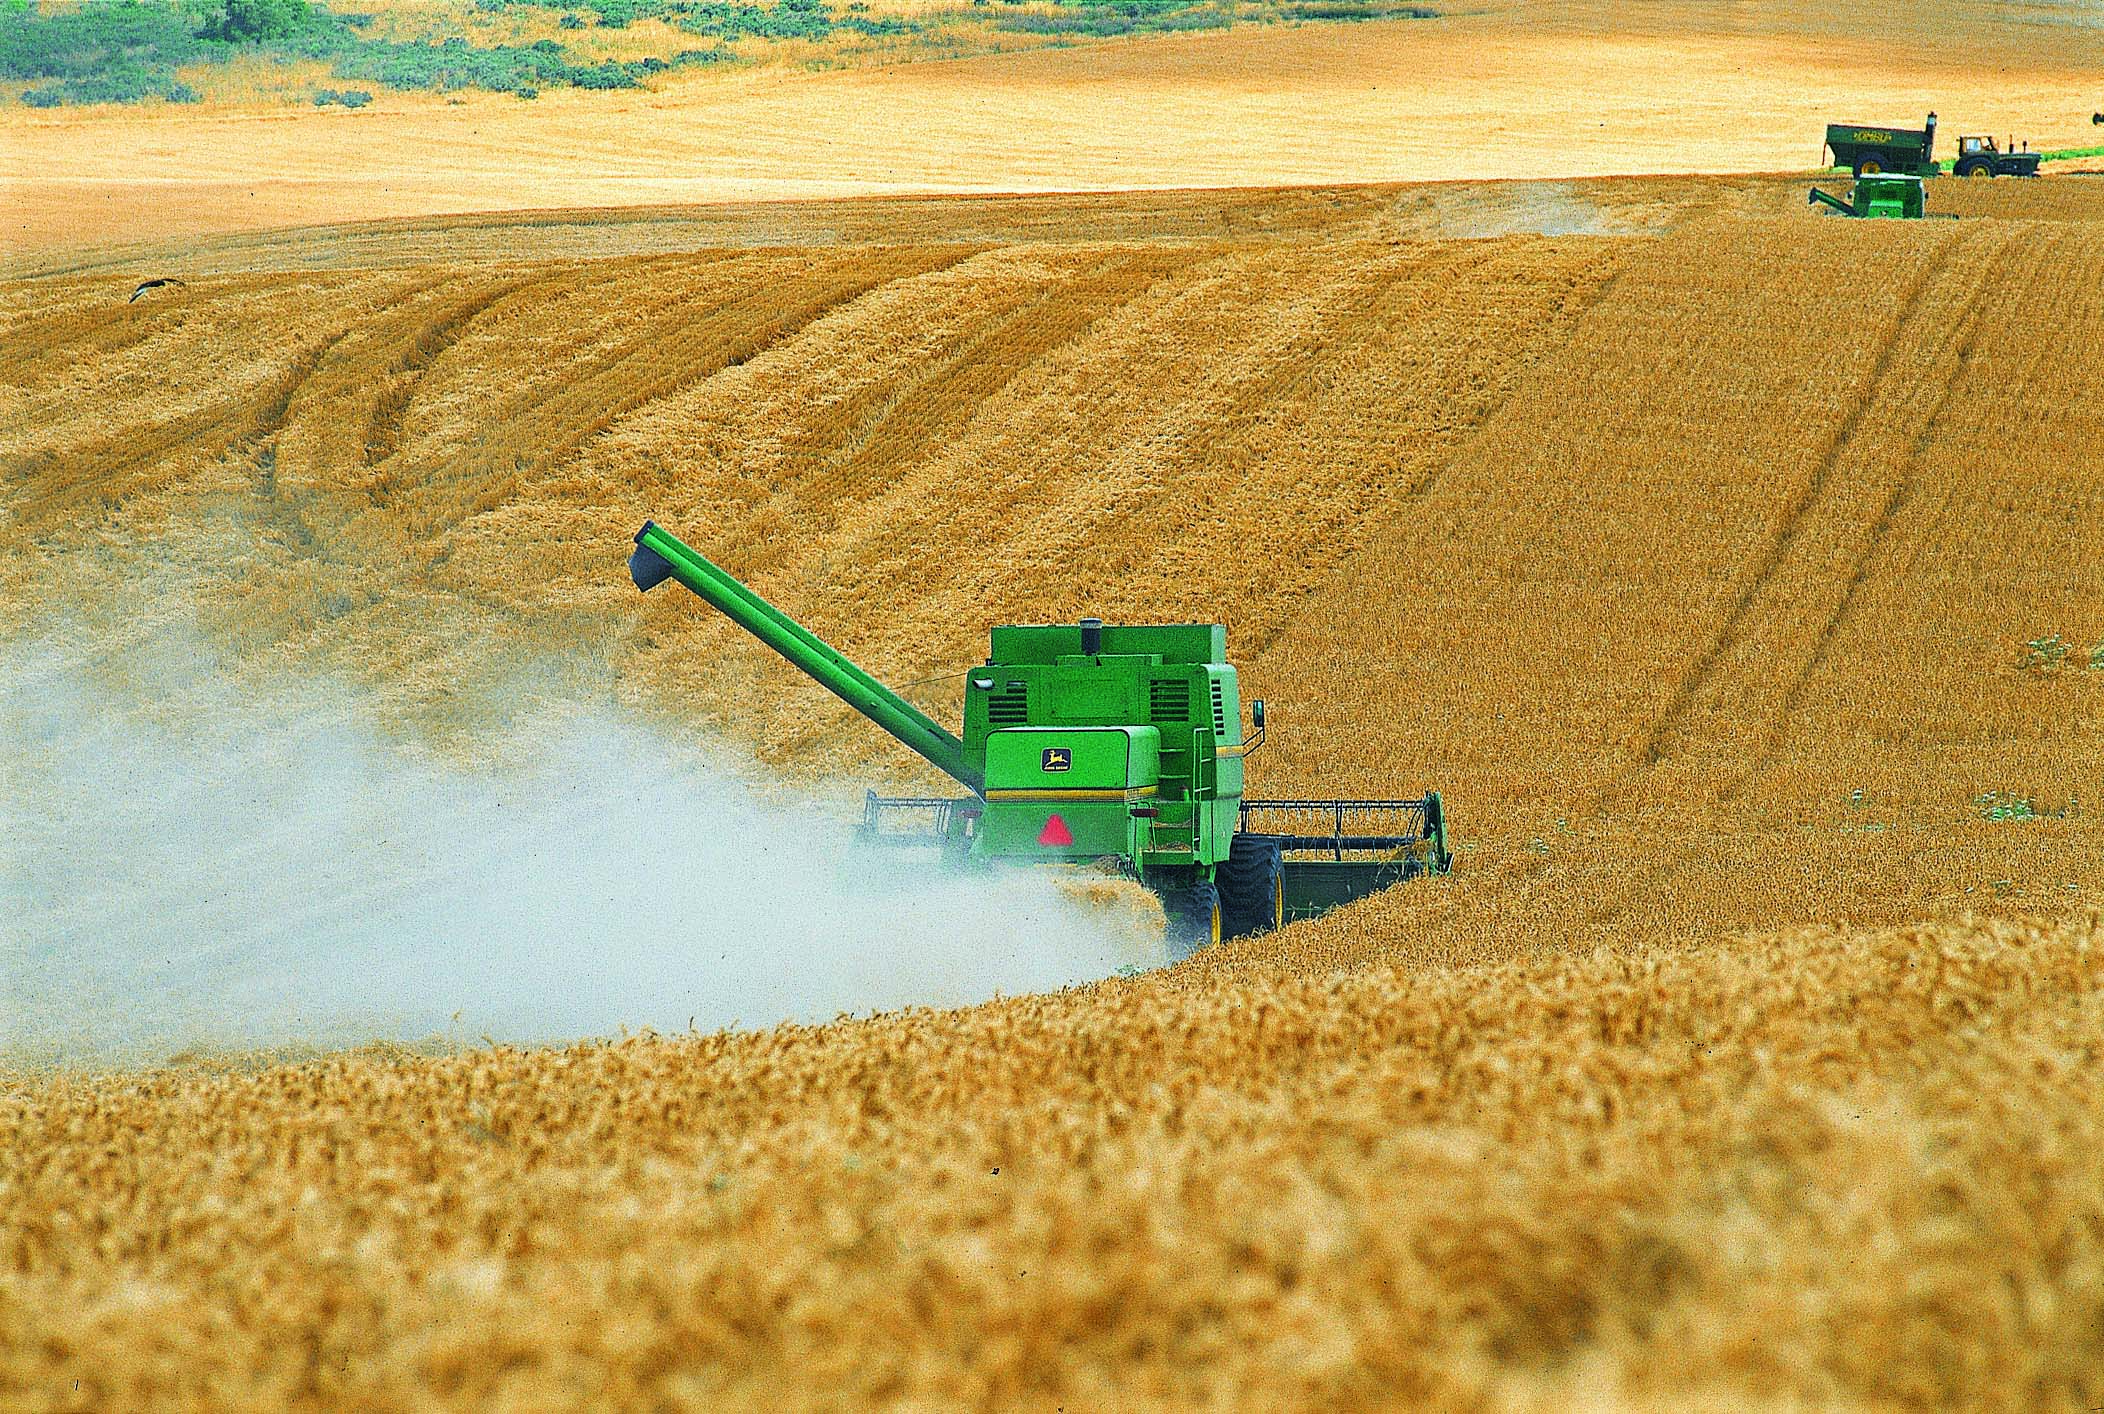 industria-agropecuaria-argentina-agroindustria-macroeconomia-especial-argentina-bbva-frances-bbva